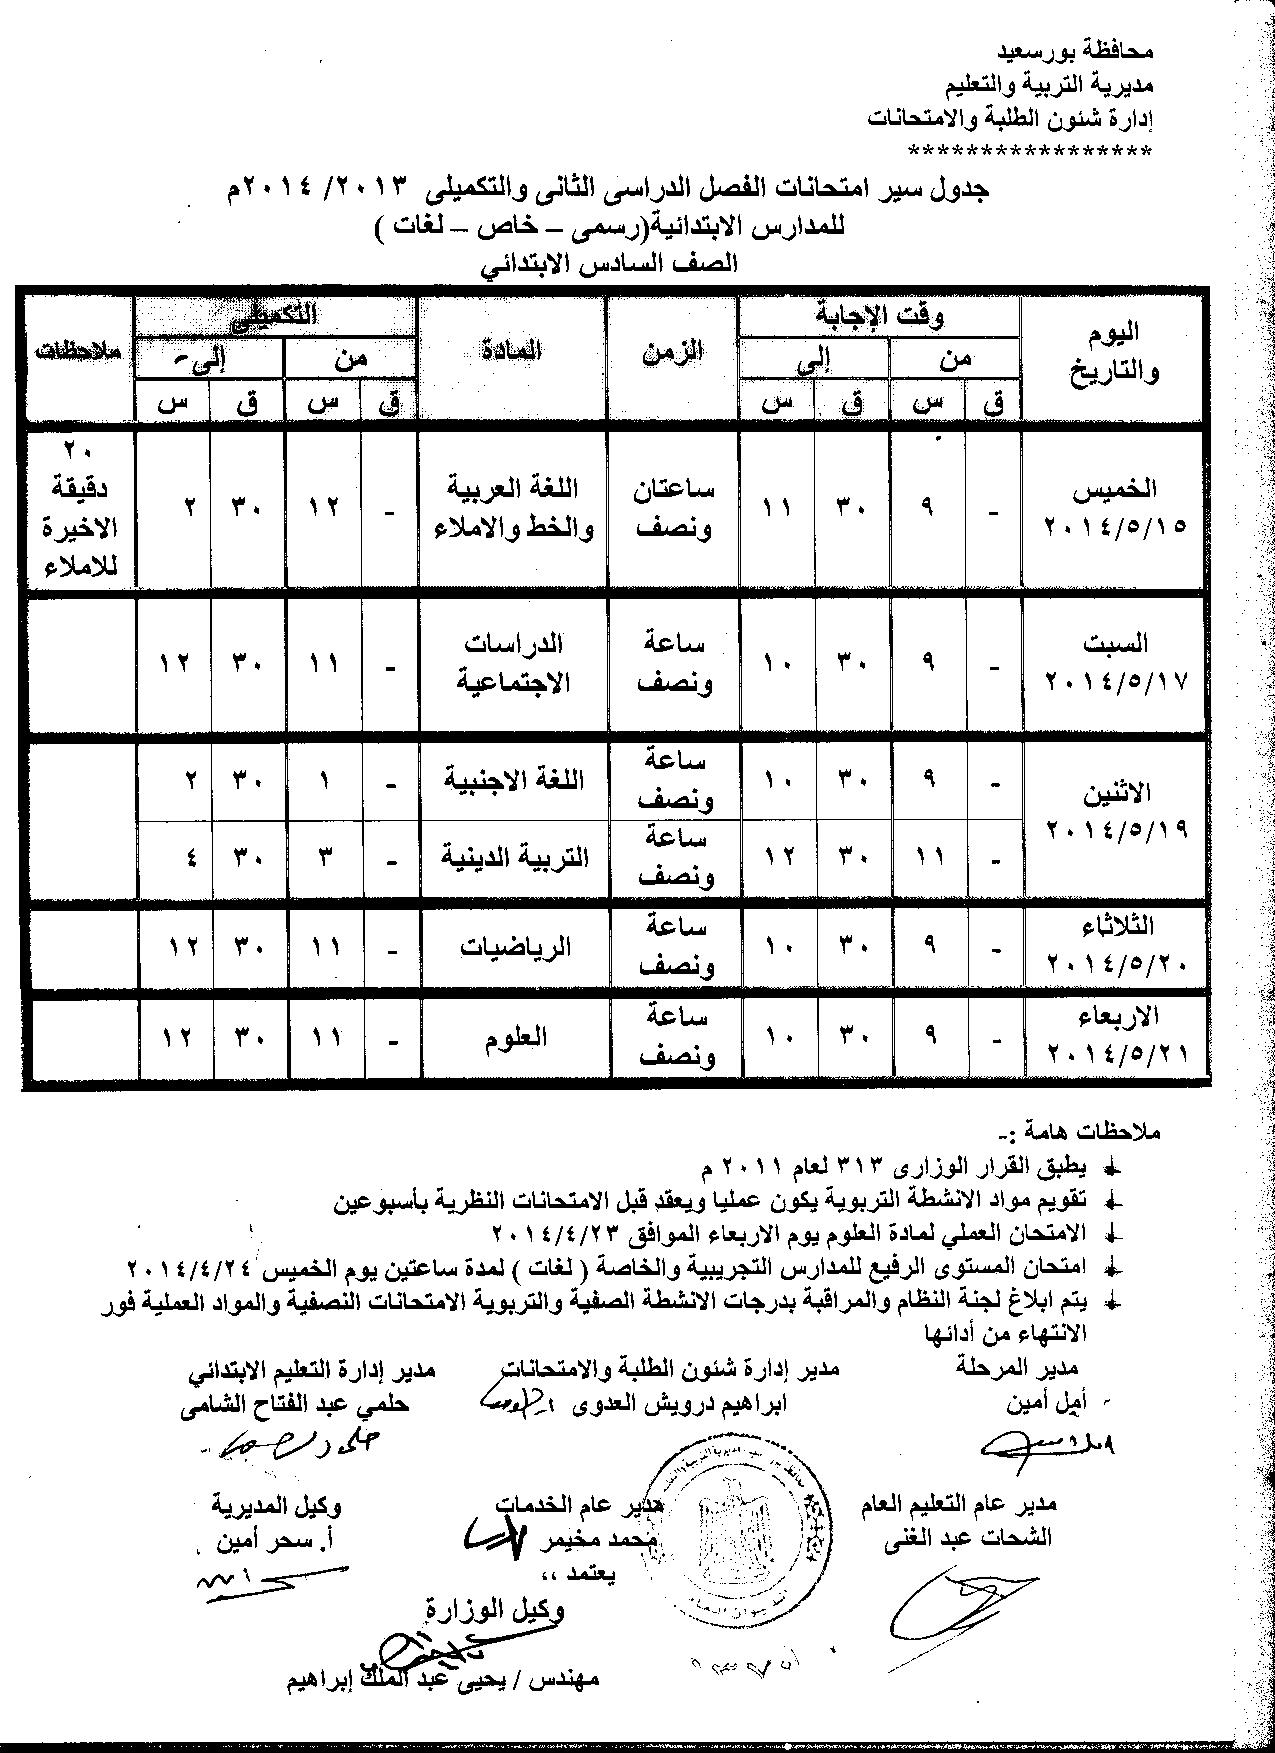 جداول امتحانات الفصل الثاني في بورسعيد 2014 ابتدائي وإعدادي